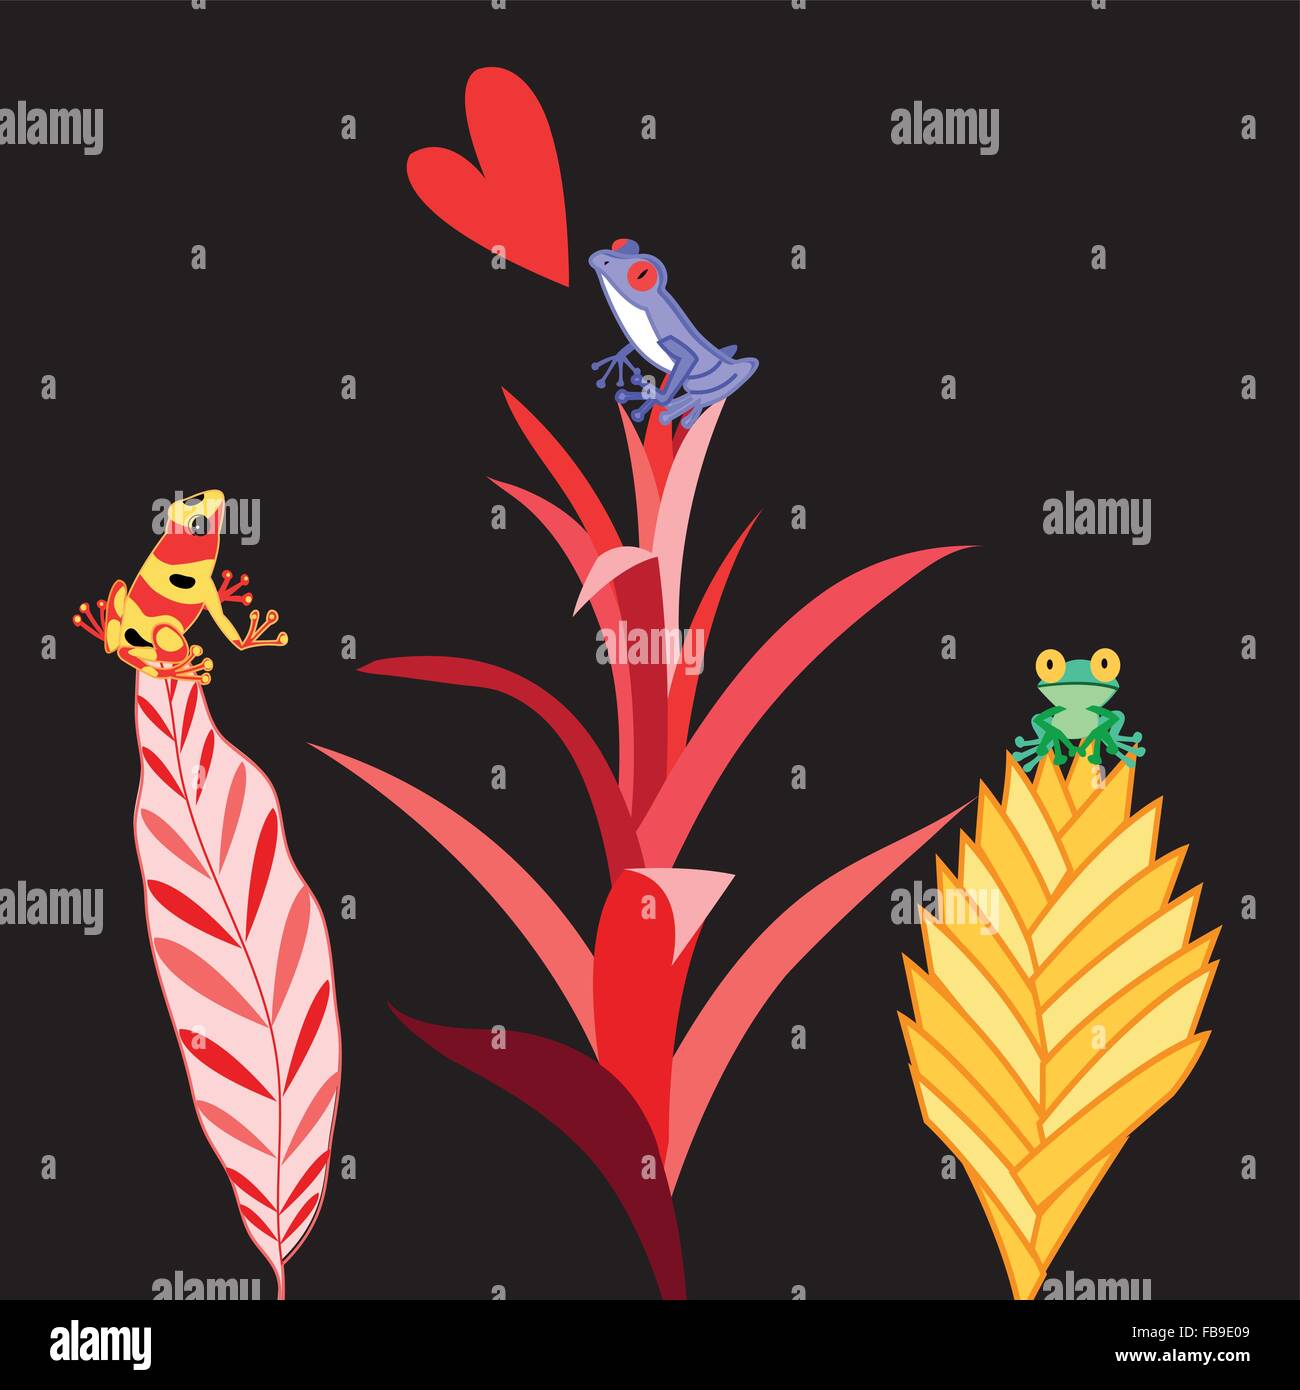 Vektor-Illustration von einer schönen bunten Frösche verliebt auf den Pflanzen sitzen Stock Vektor